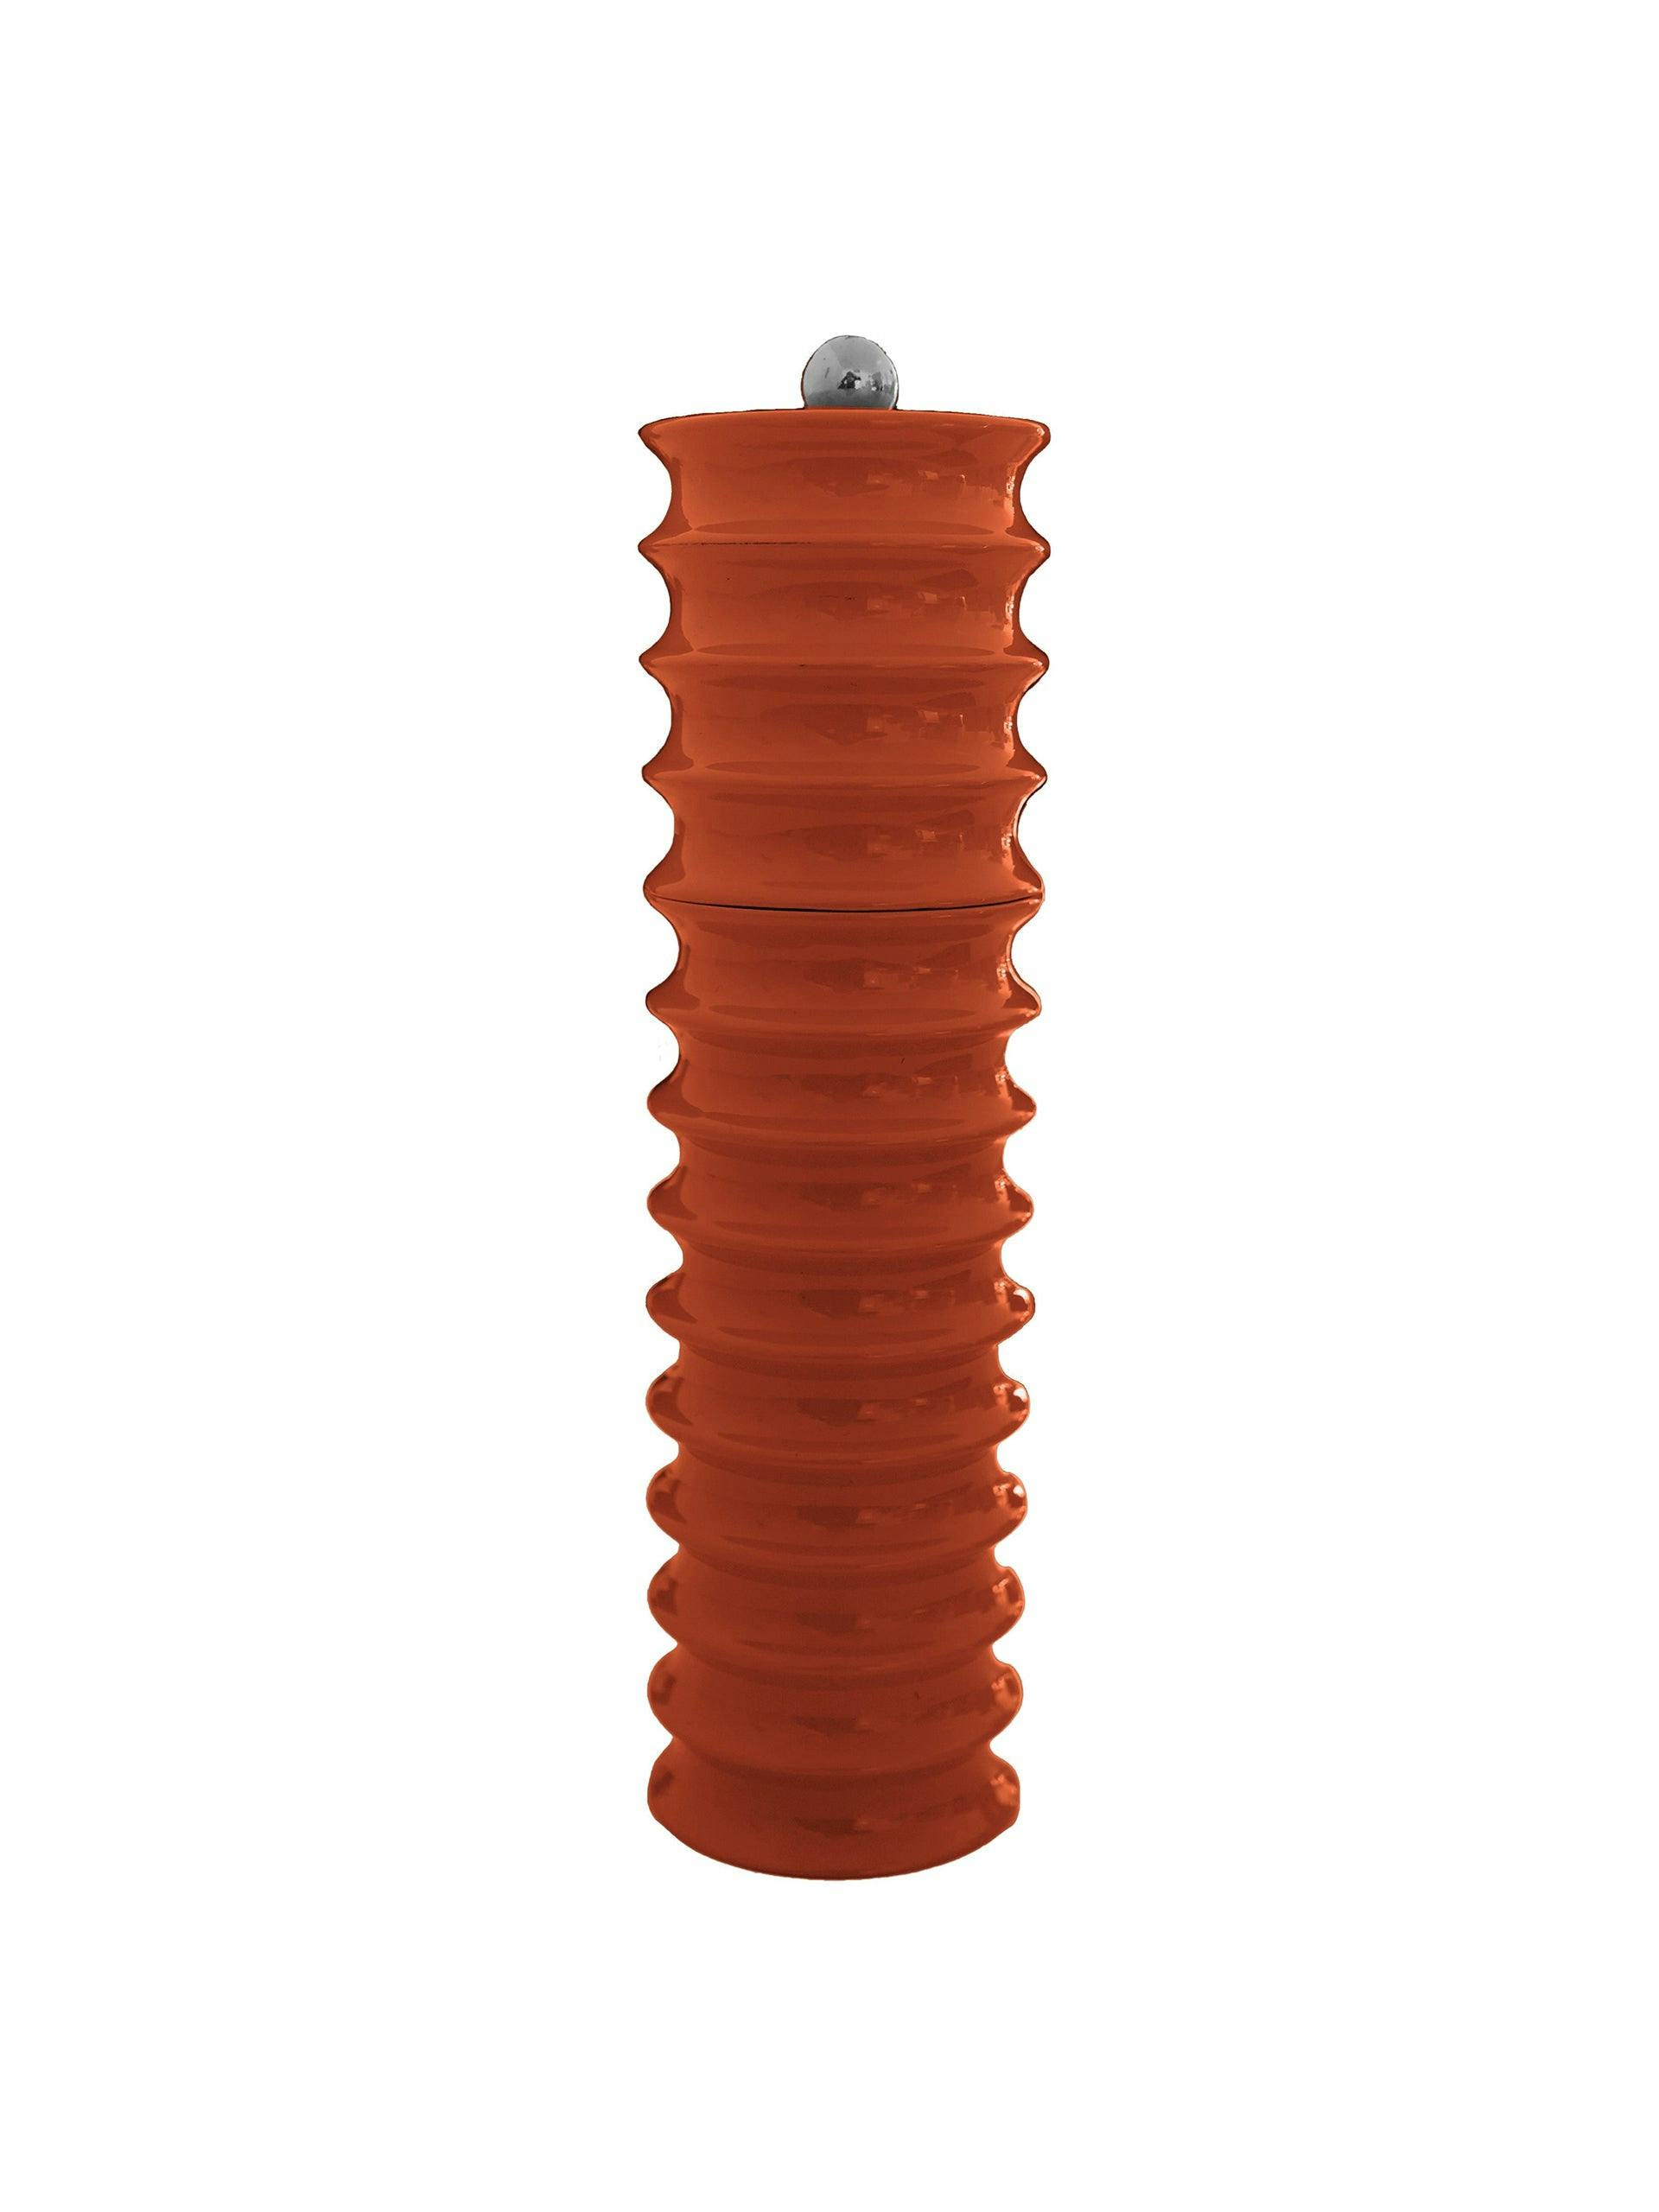 Twister salt/pepper grinder in Orange